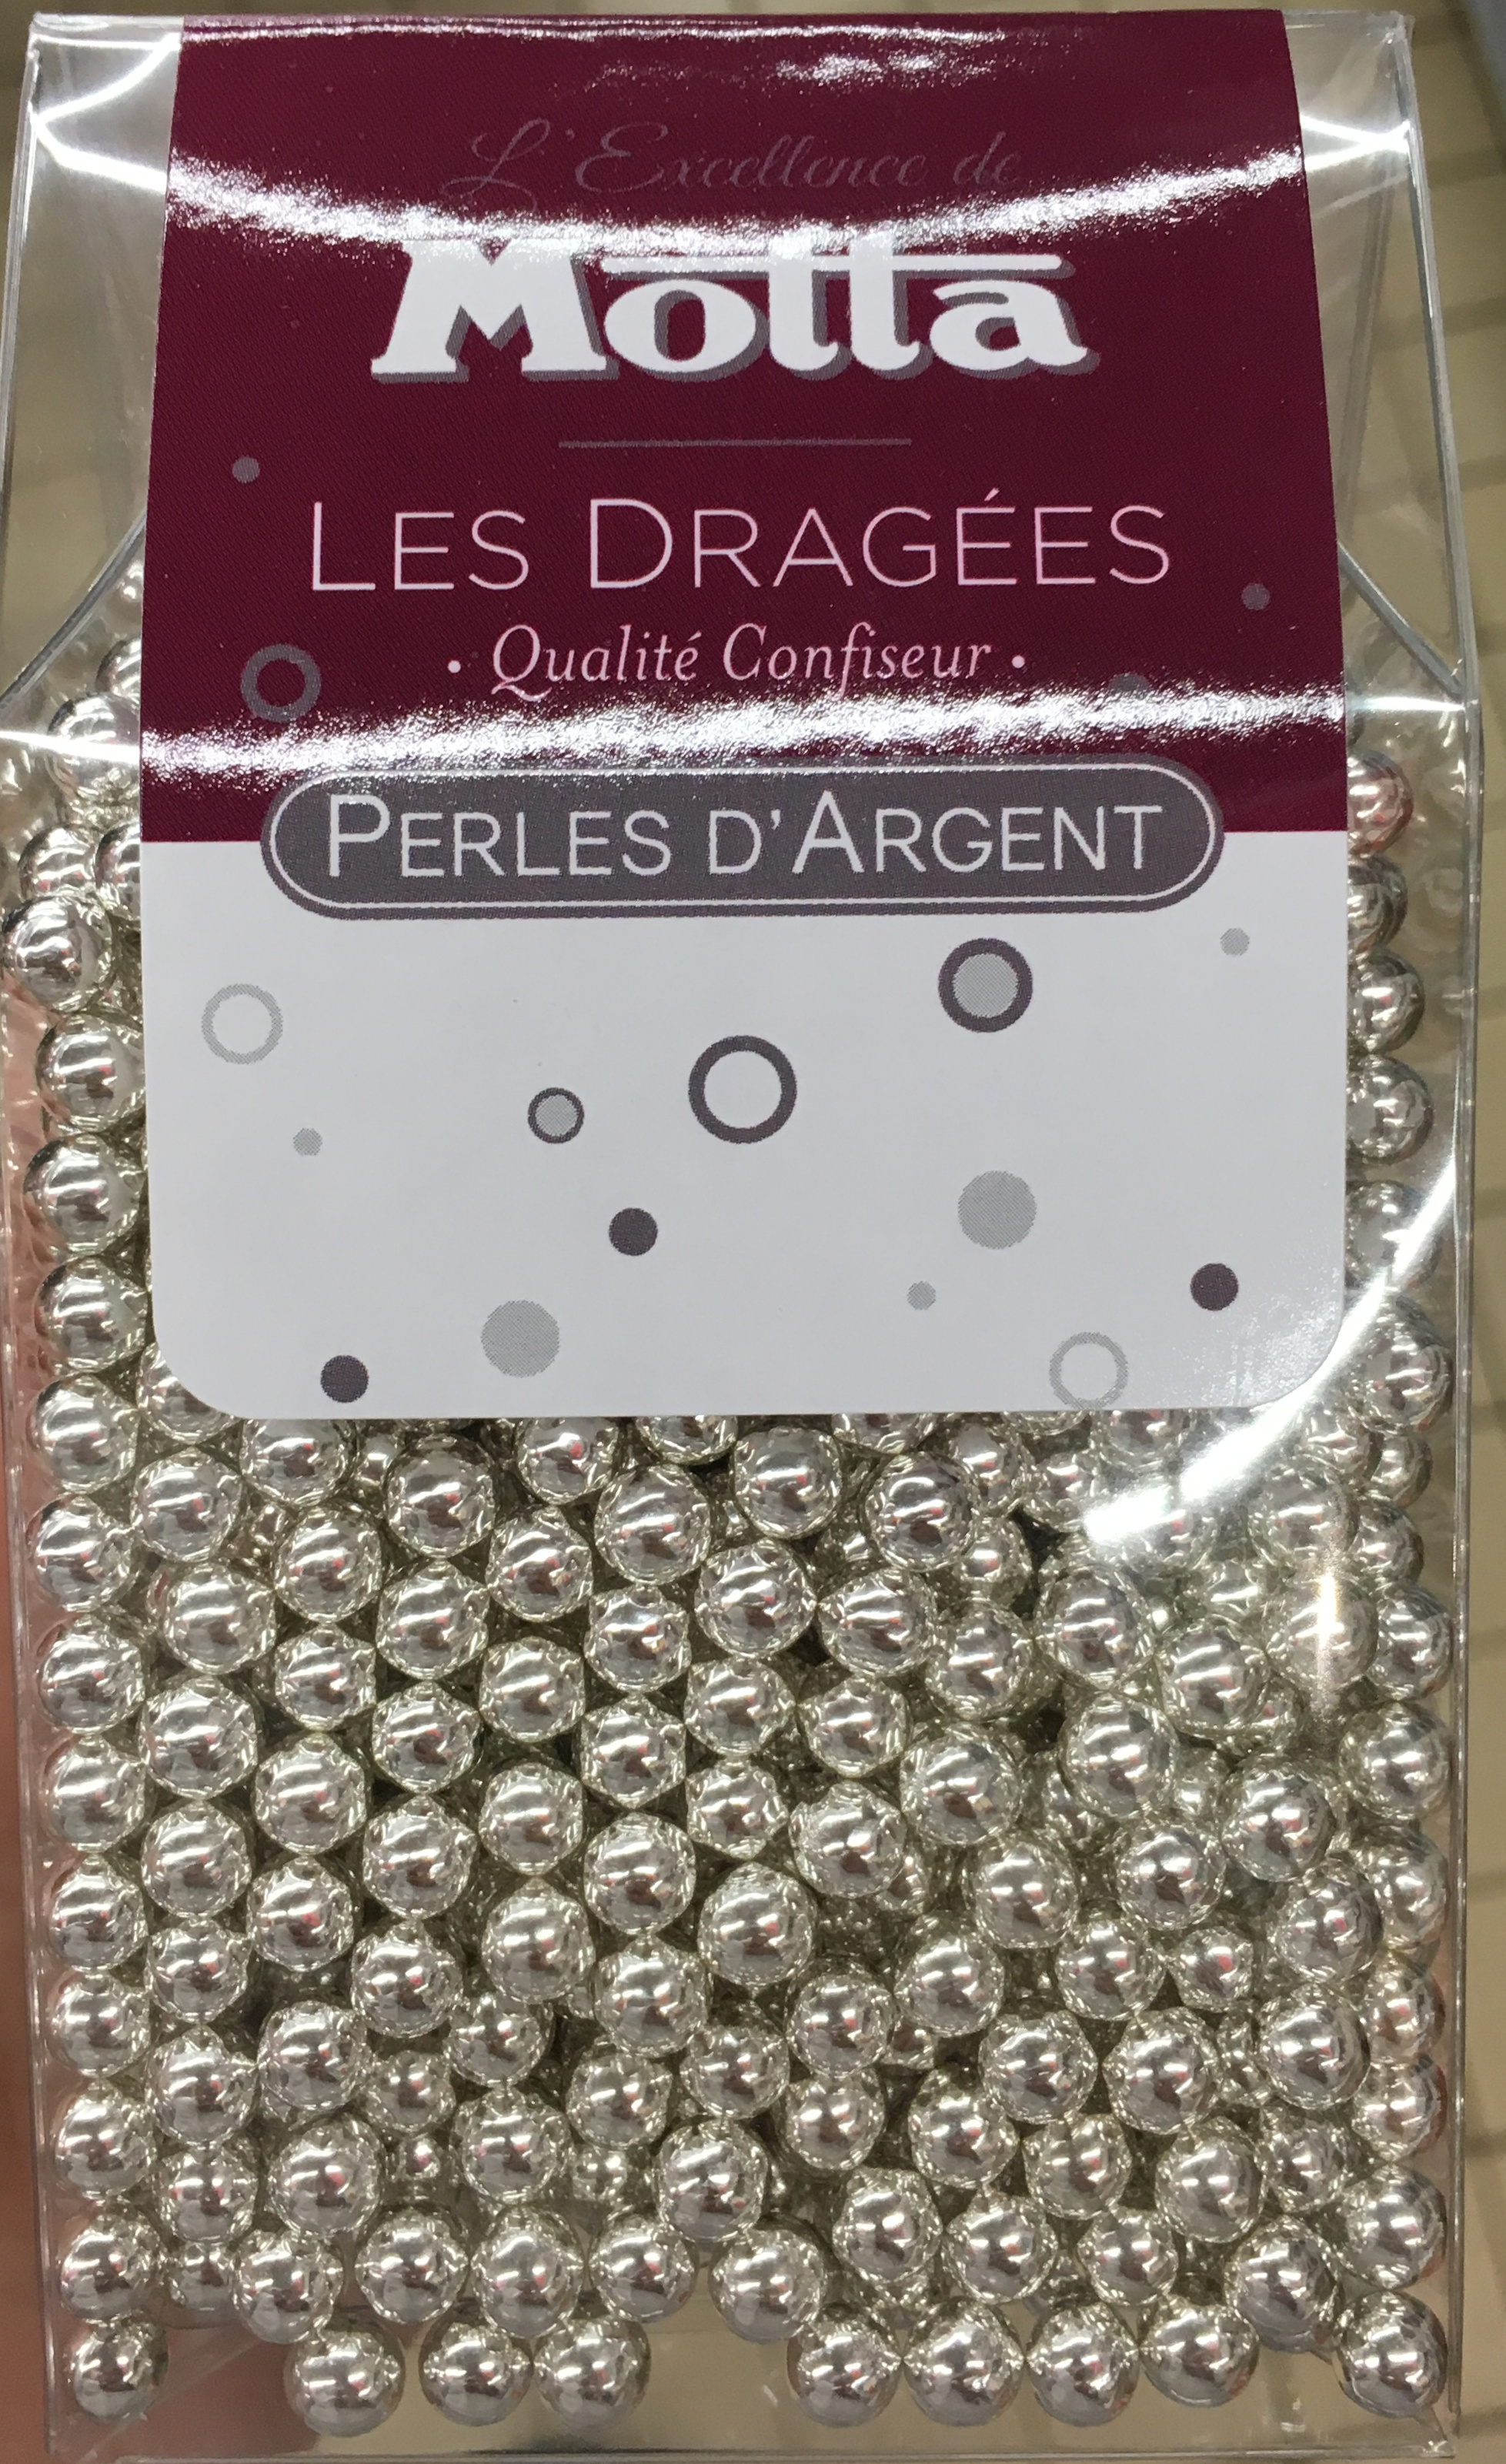 Les Dragées Perles d'Argent - Product - fr